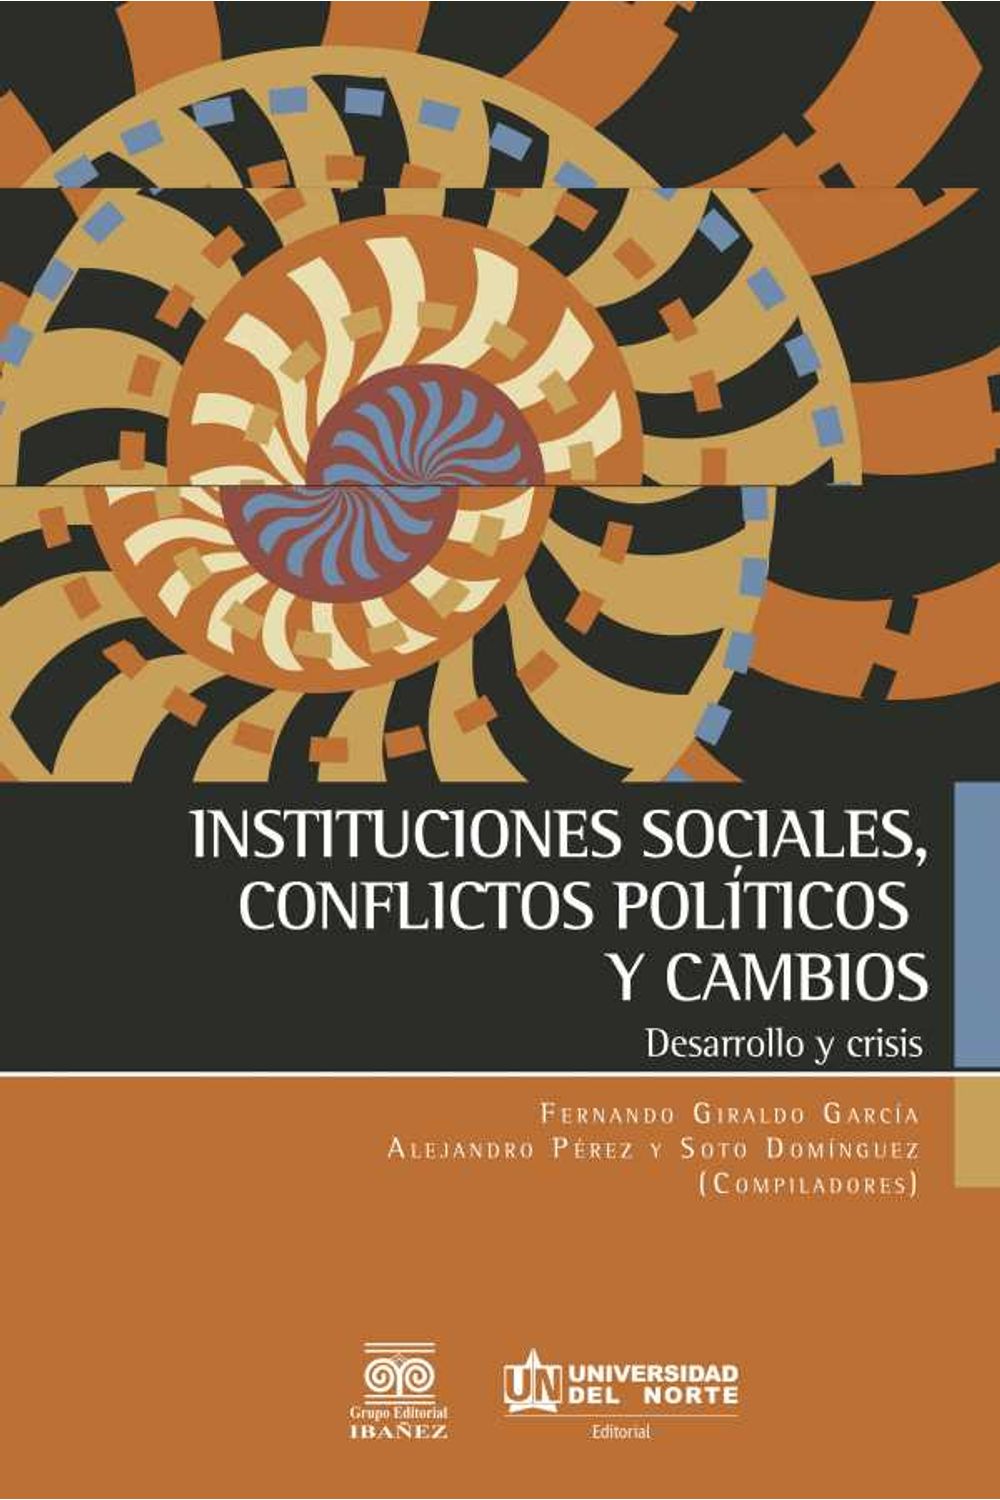 bw-instituciones-sociales-conflictos-poliacuteticos-y-cambios-u-del-norte-editorial-9789587418286